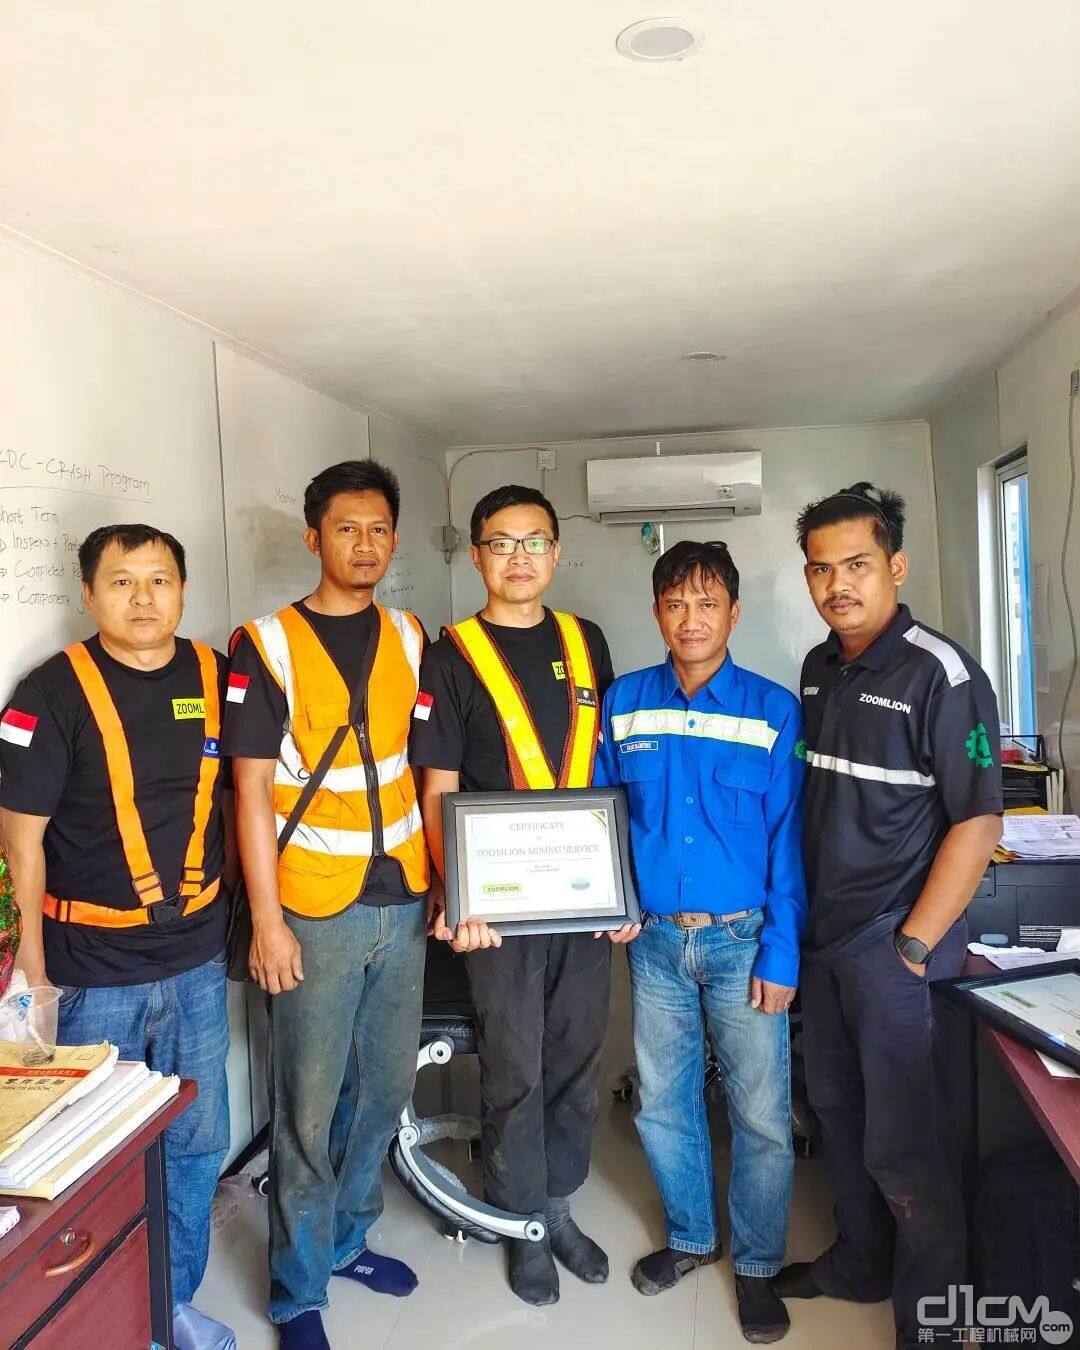 中联矿机海外服务团队赢得印尼客户“最佳合作伙伴”奖